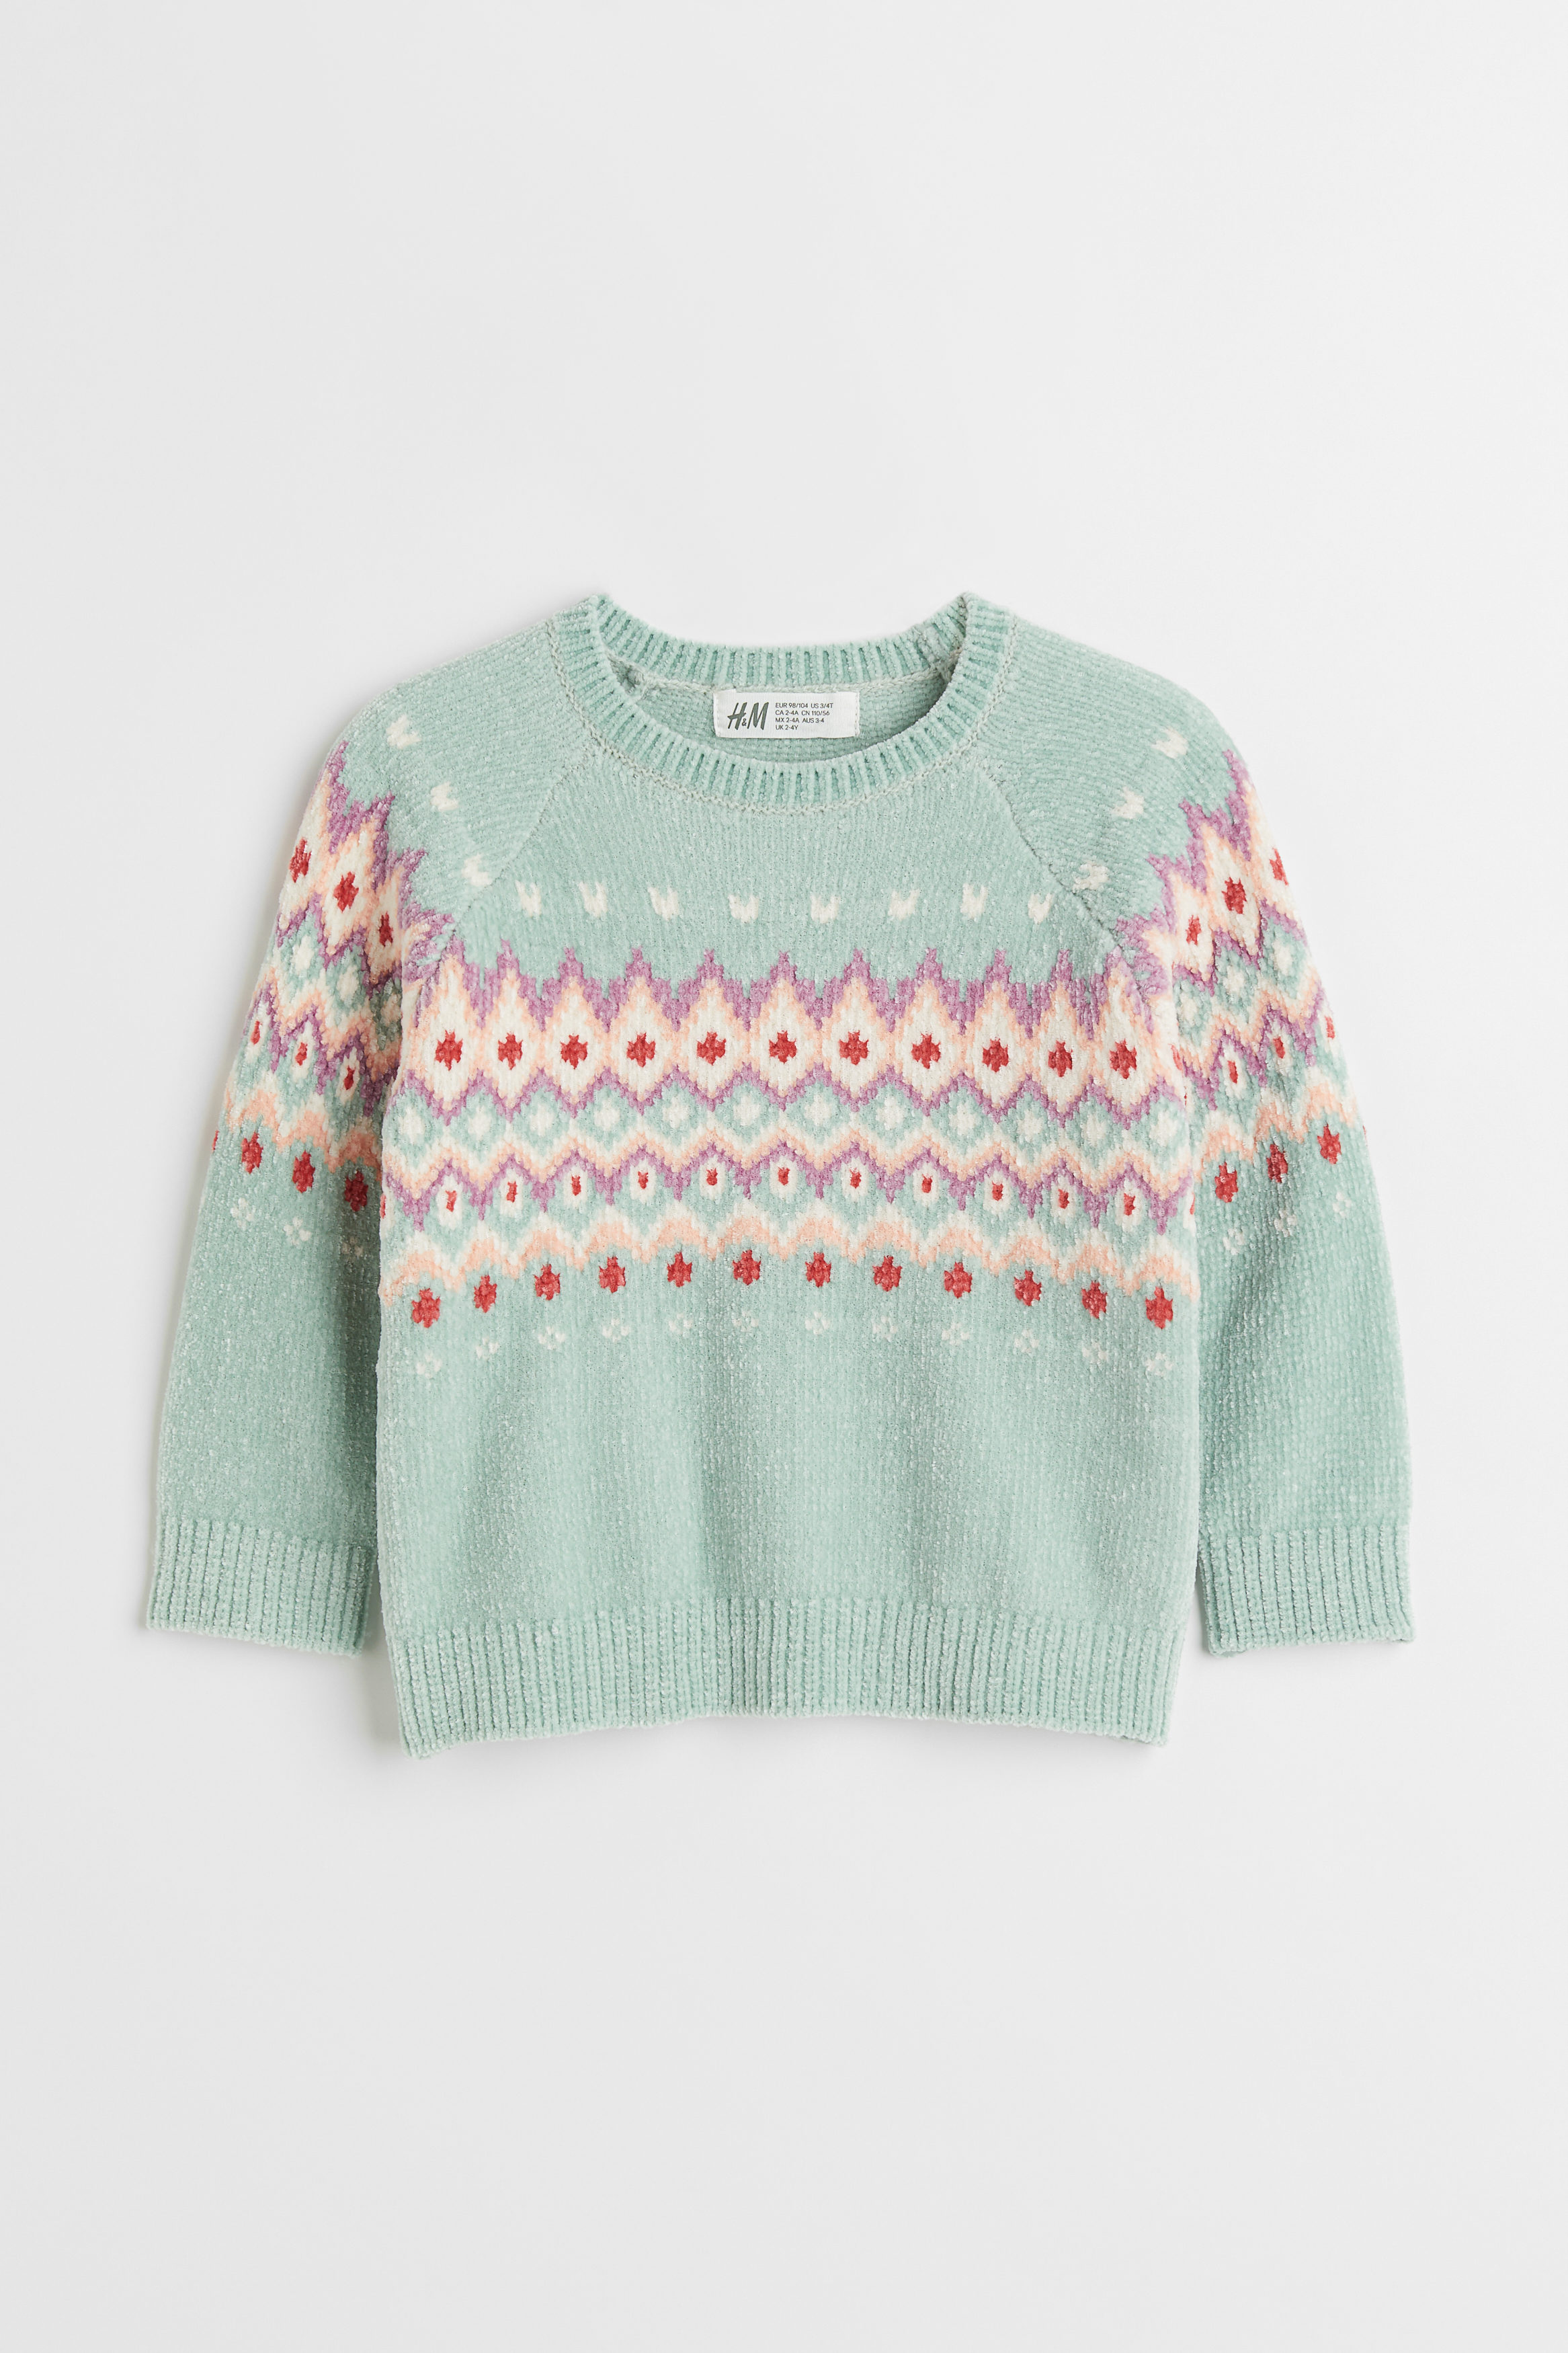 H&M Pullover Rabatt 56 % Blau/Beige 98 KINDER Pullovers & Sweatshirts Stricken 